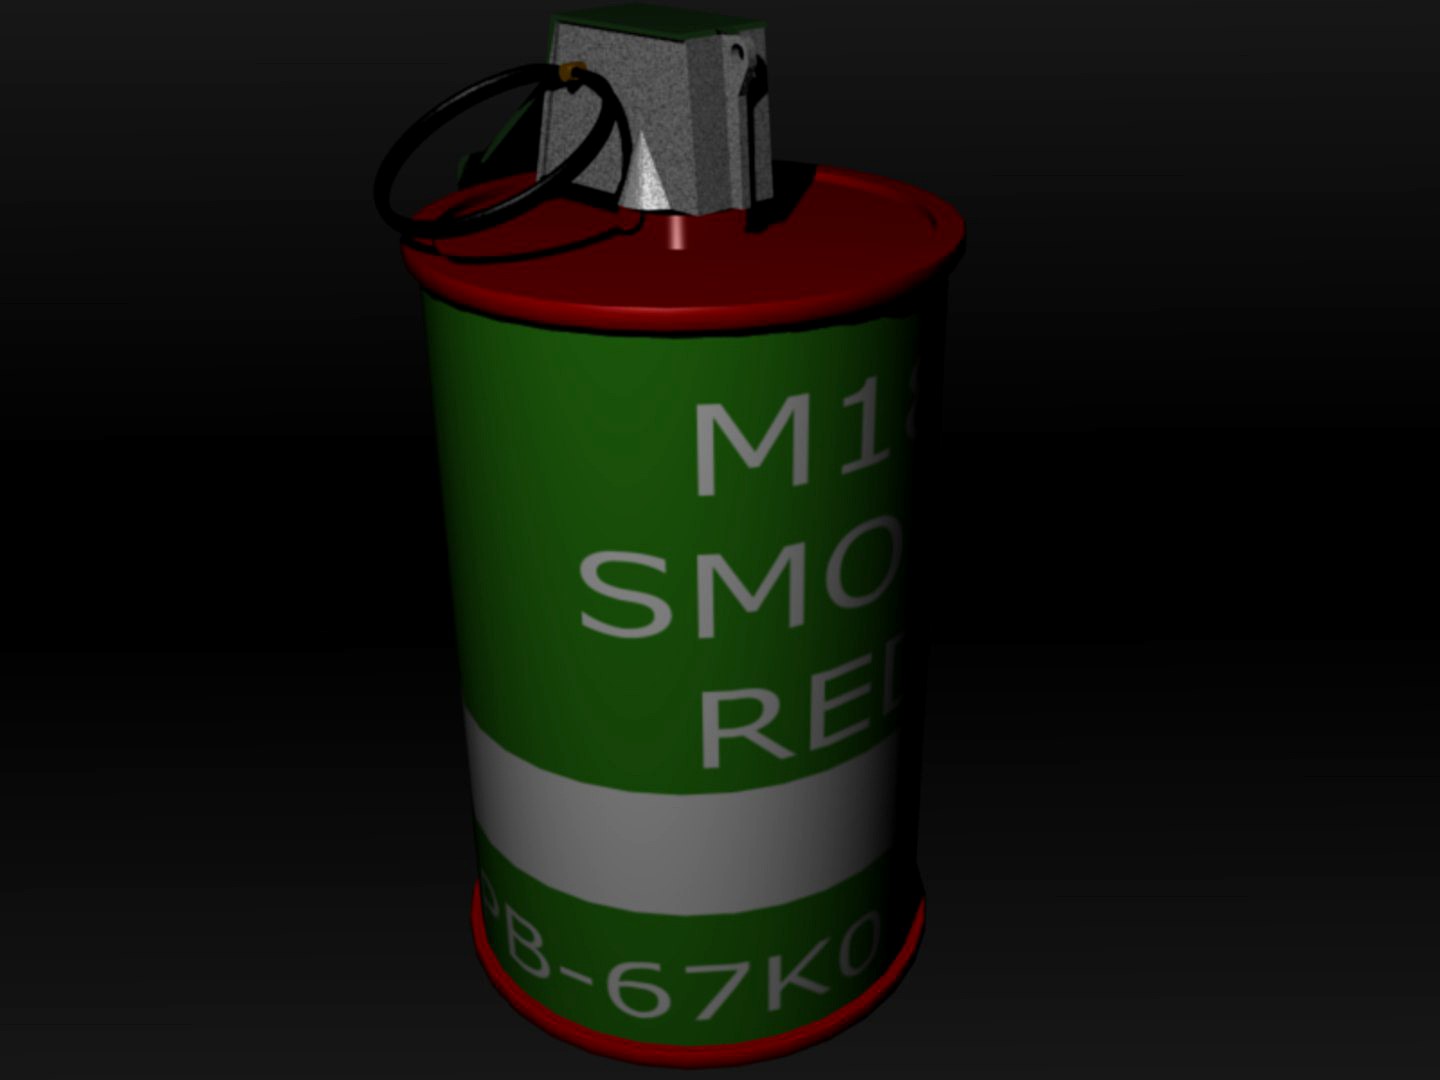 M18 smoke Grenade